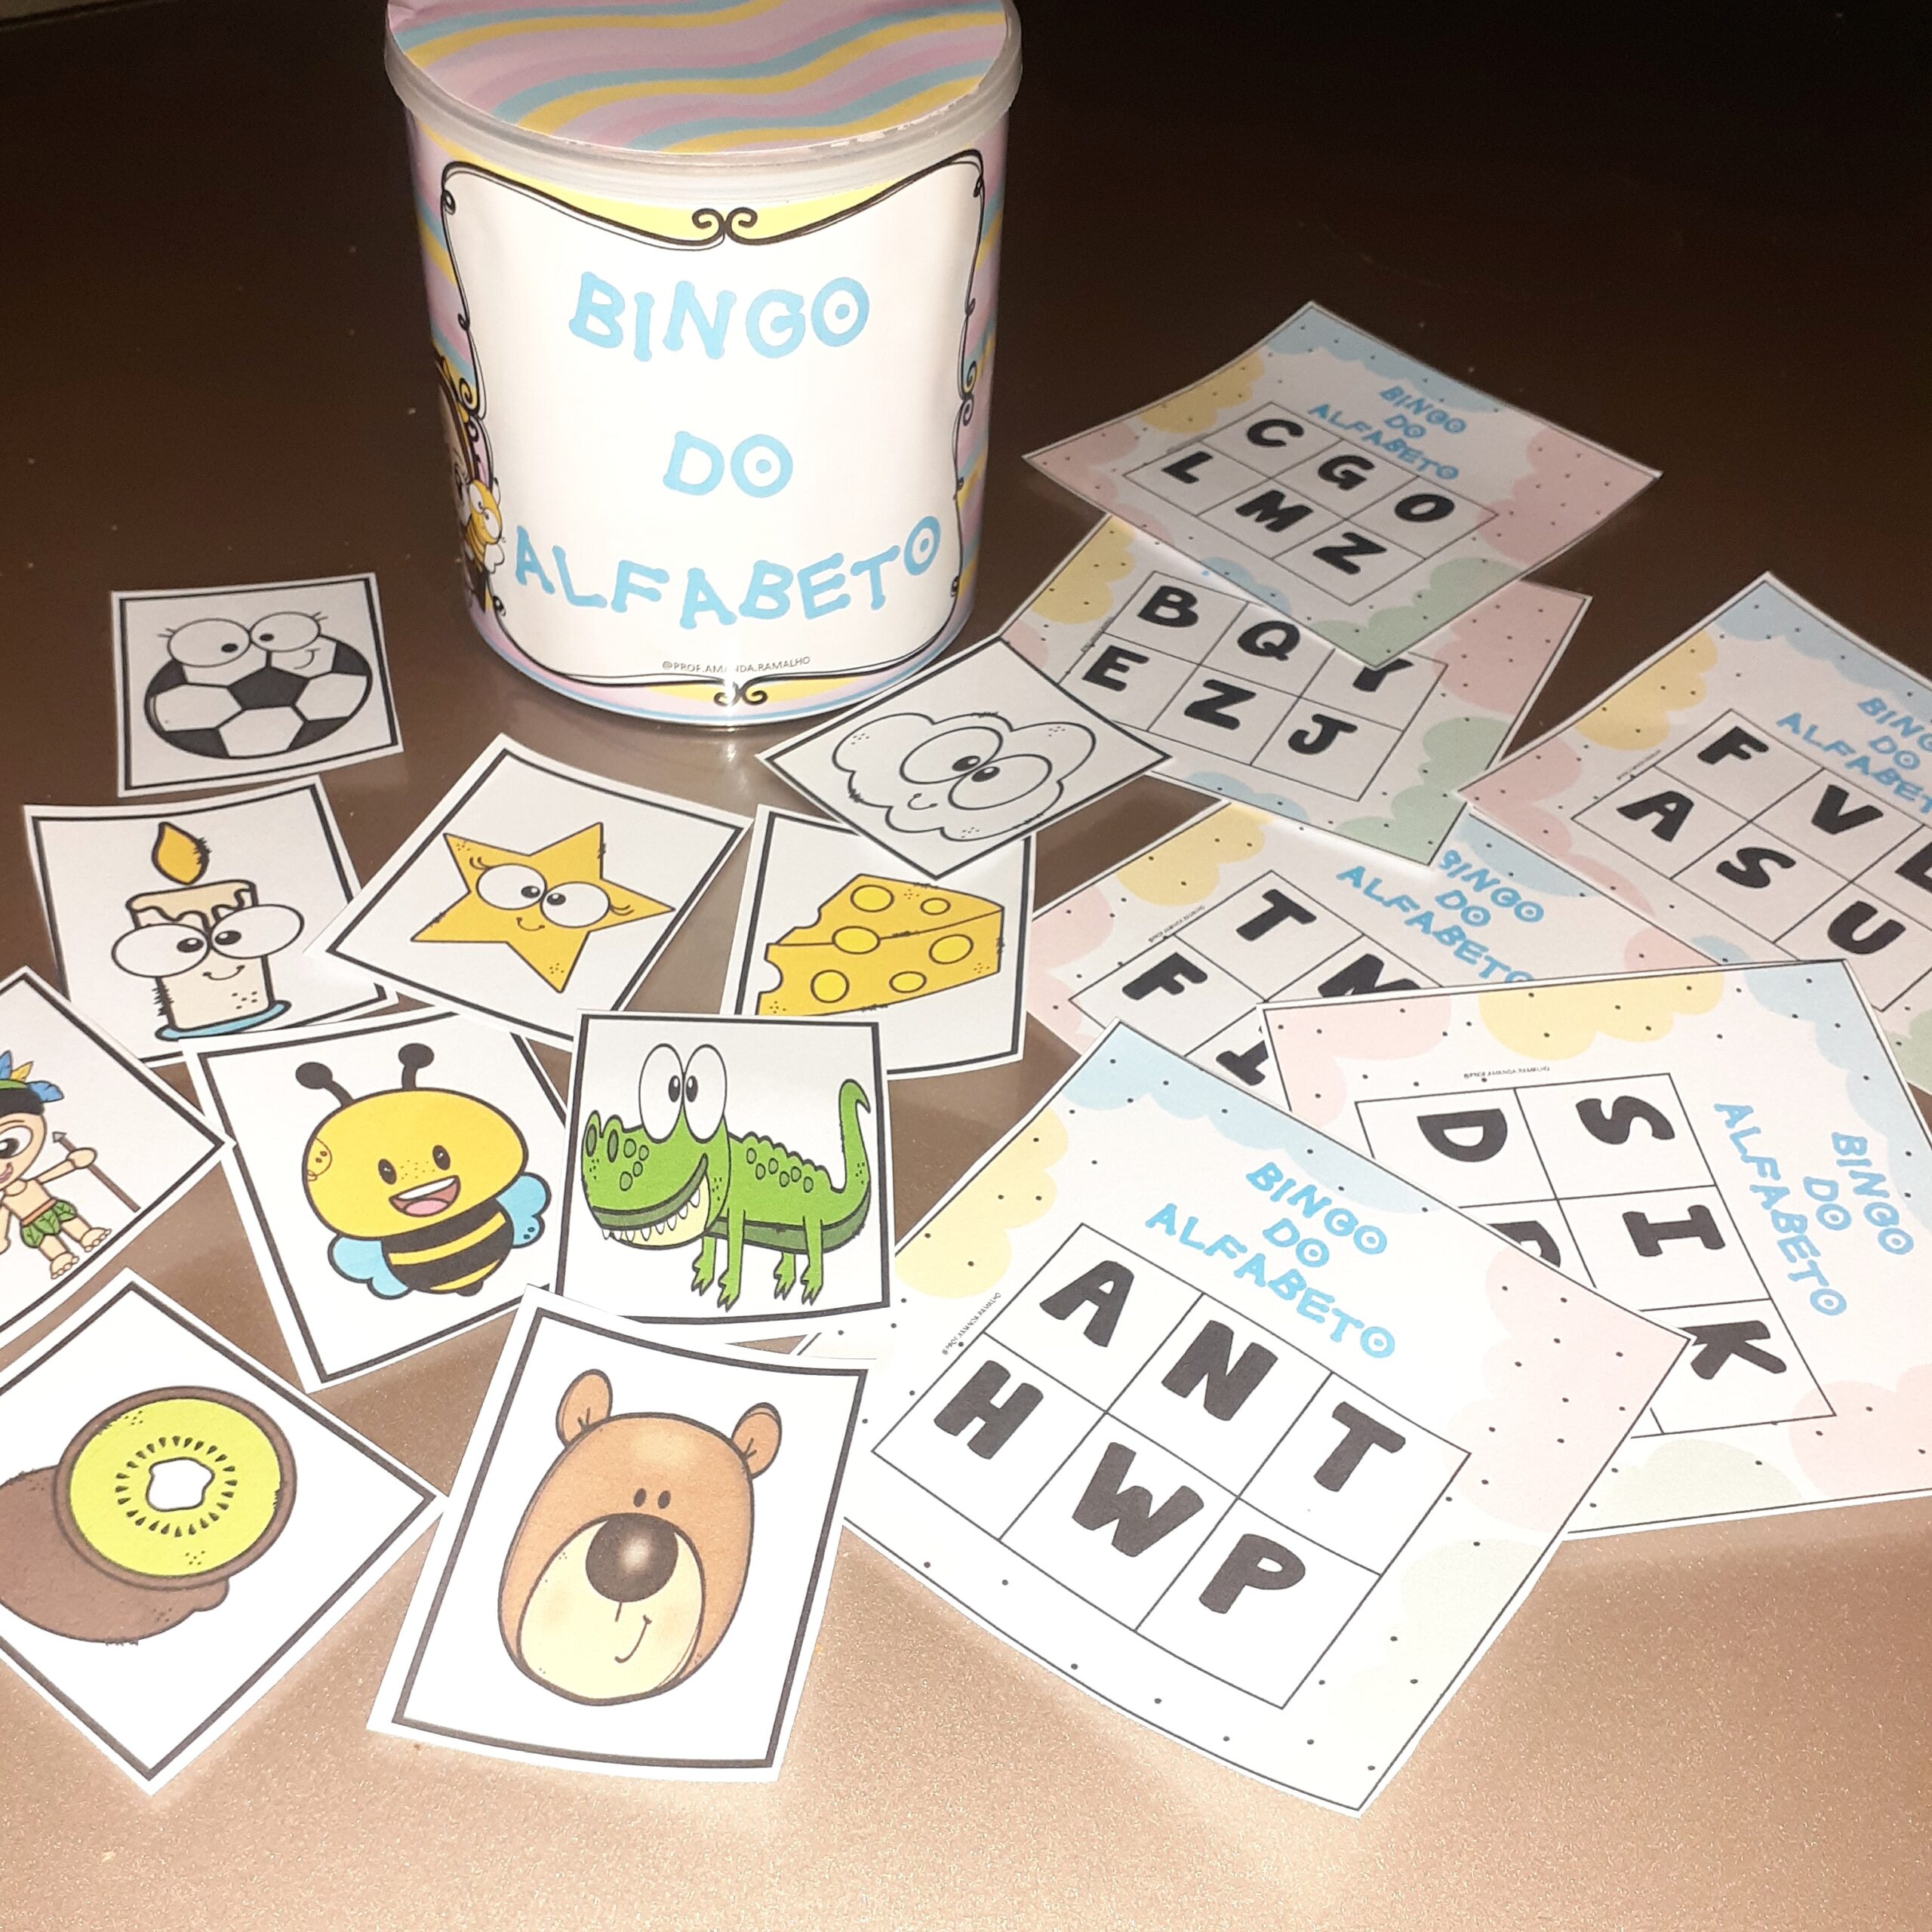 Jogo Pedagógico Bingo do Alfabeto, Alfabetização